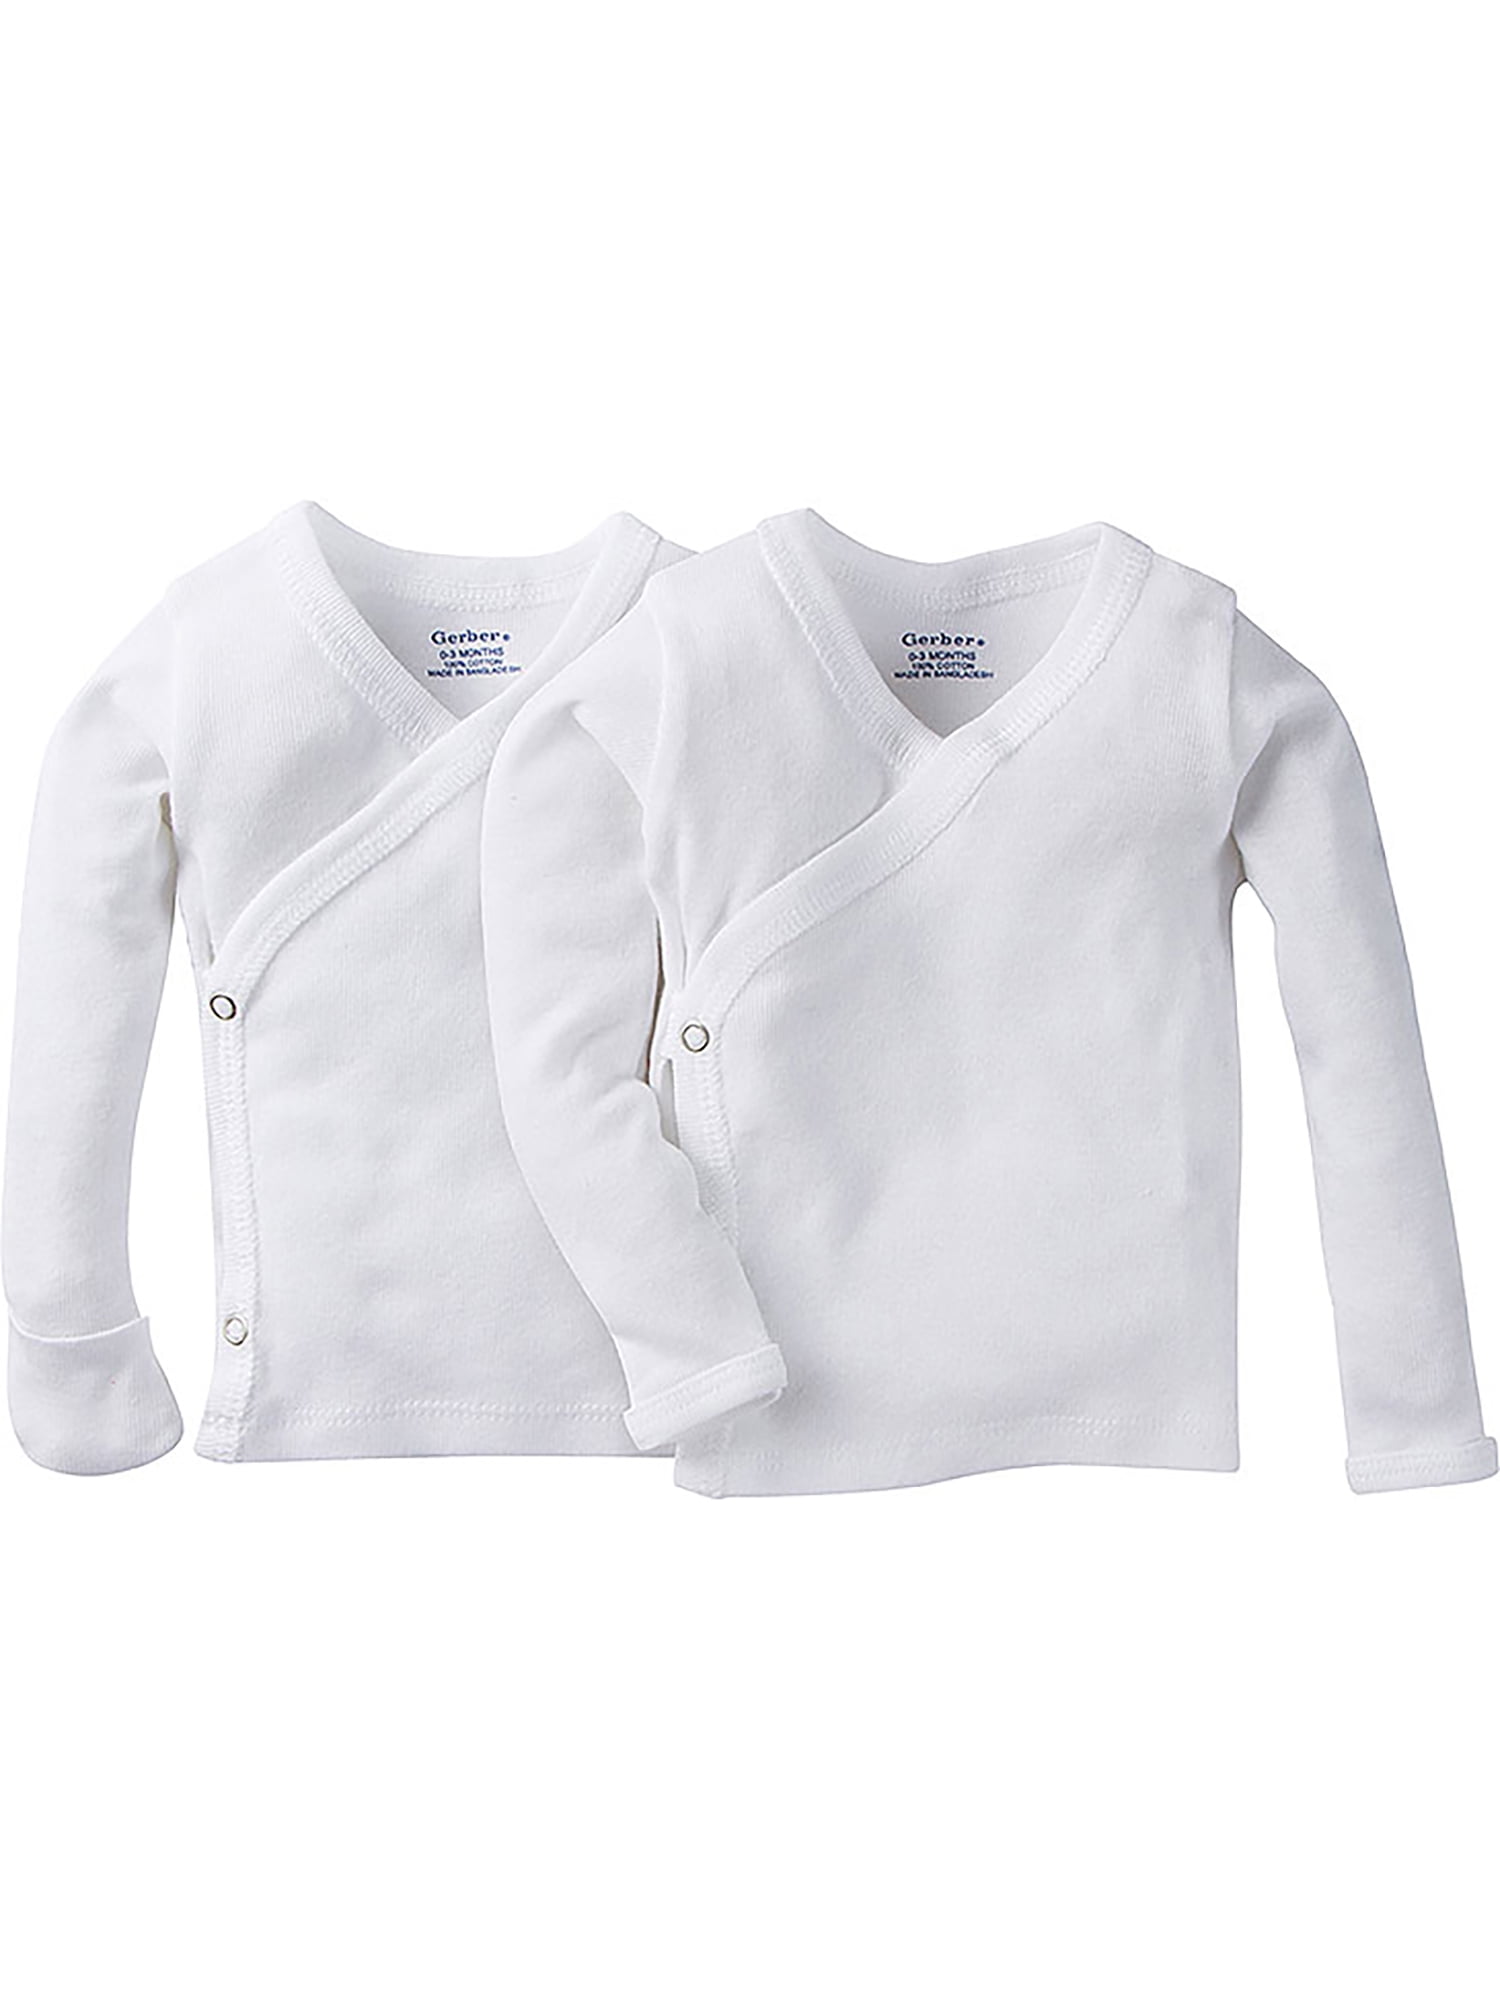 Unisex-baby 0-3 months 12 Pack Long Sleeve Side Snap Mitten Cuffs Shirt 